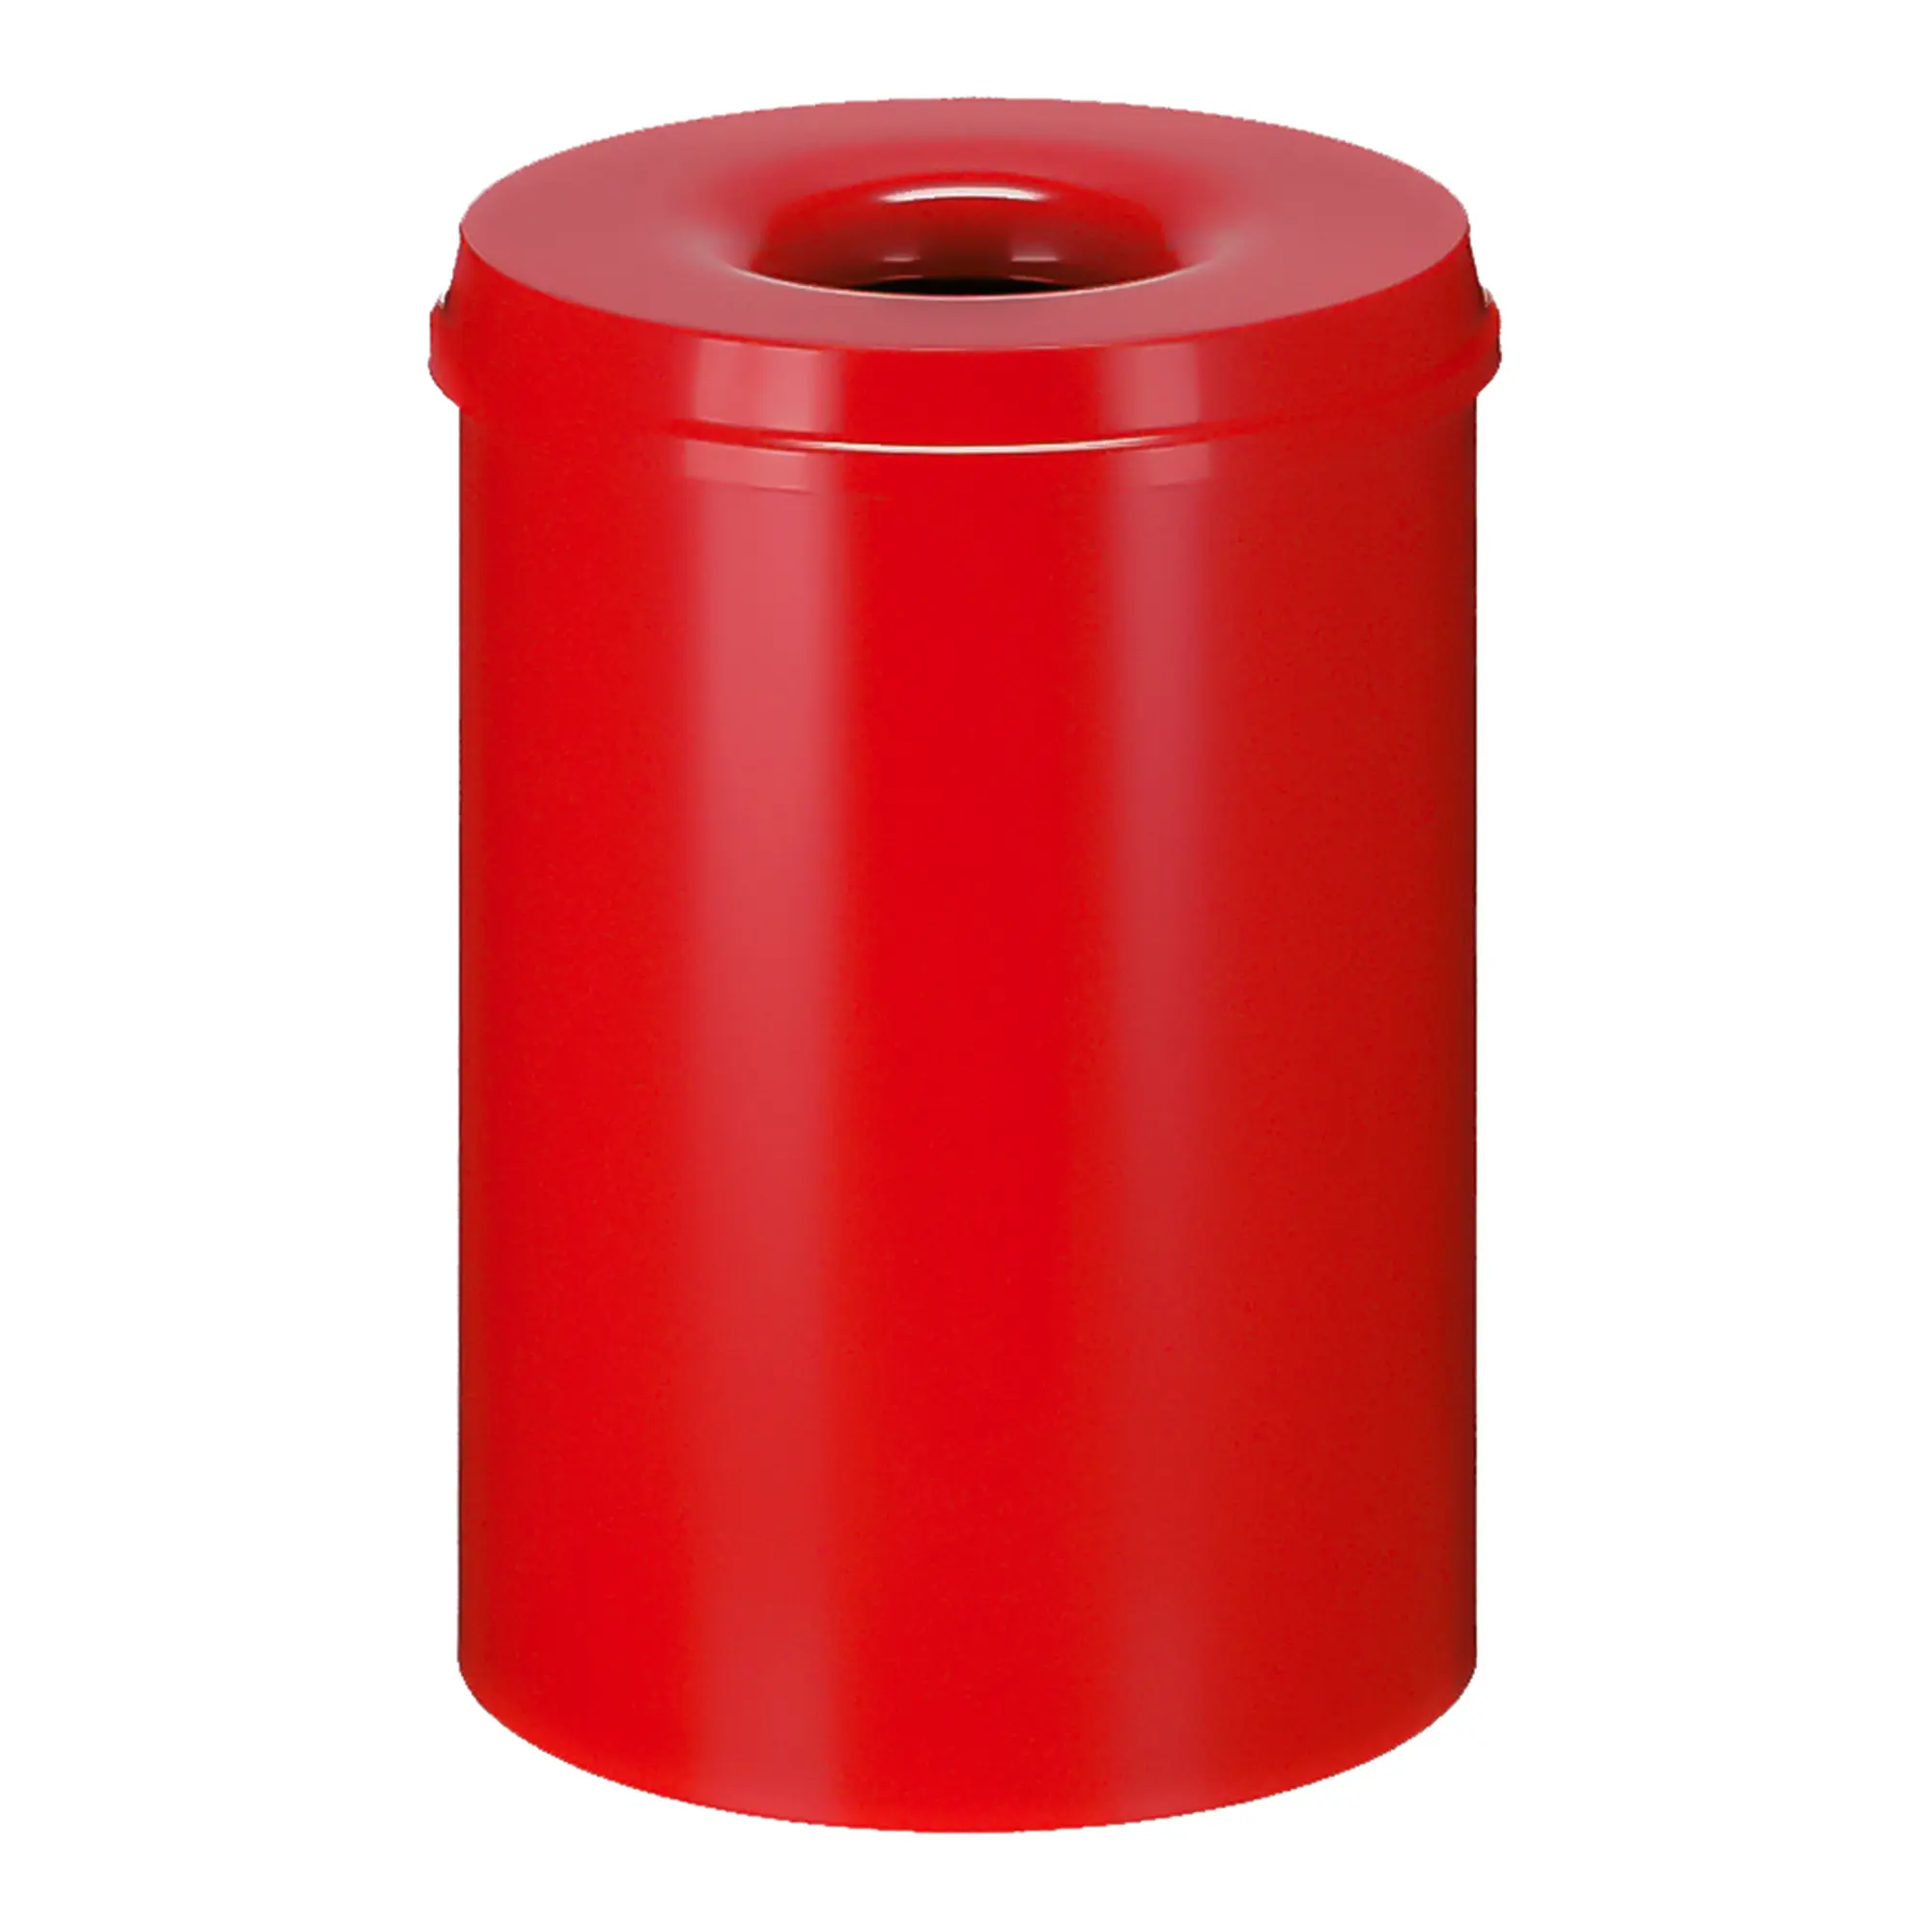 V-Part Feuerlöschender Papierkorb 30 Liter rot 31001828_1